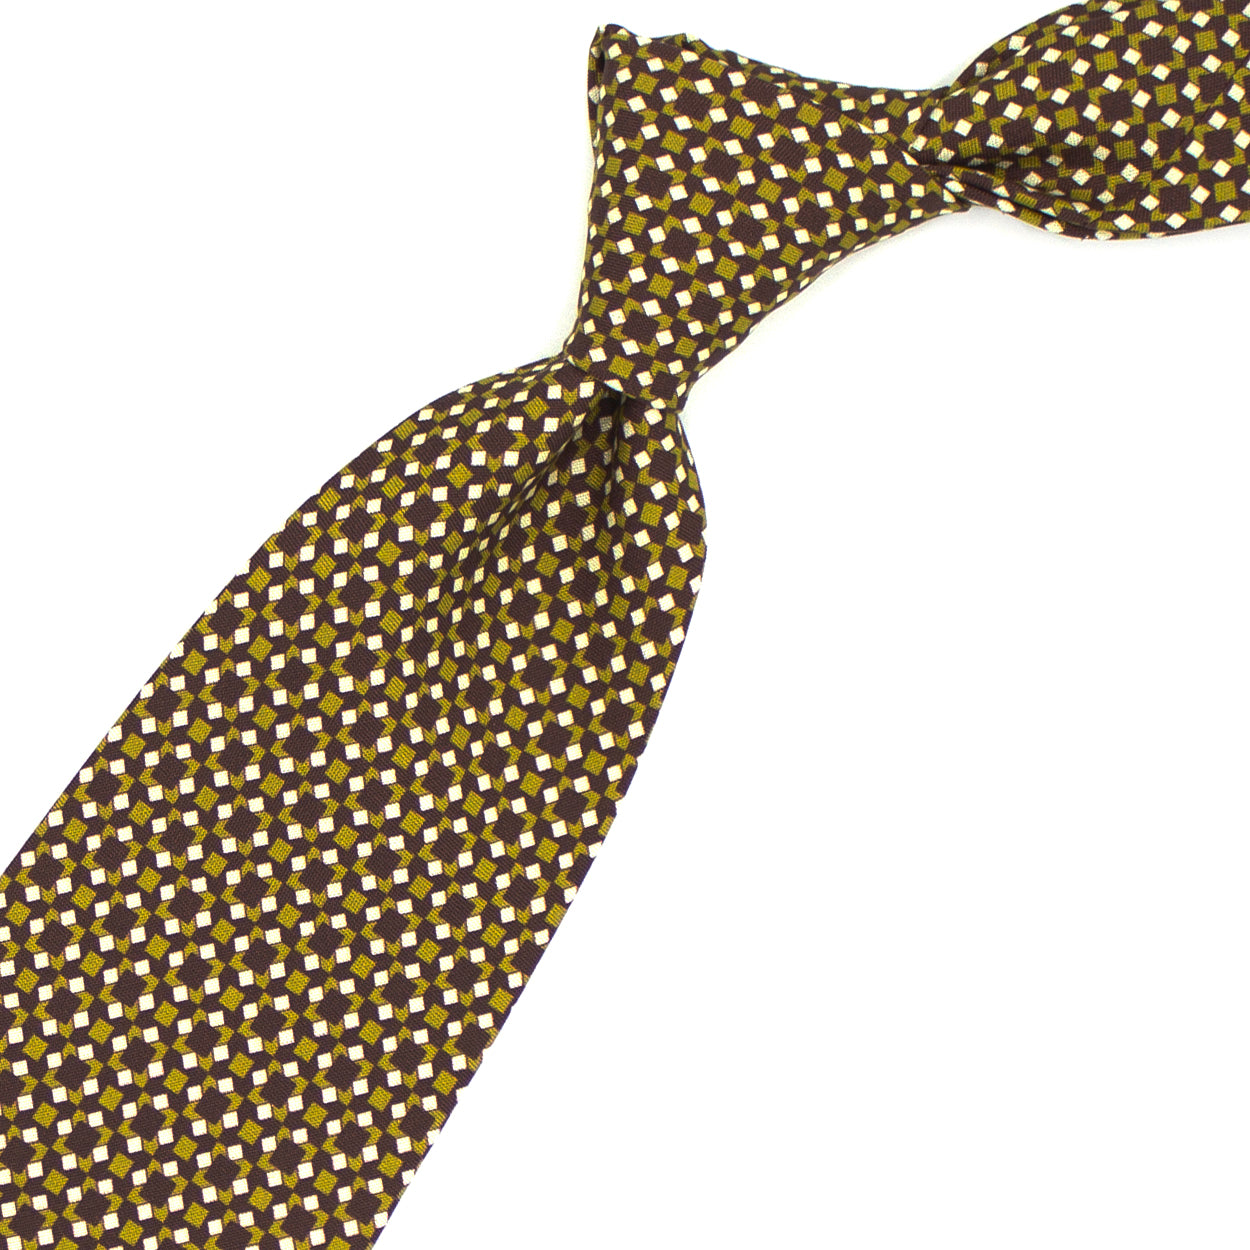 Cravatta bordeaux con pattern geometrico bianco e senape